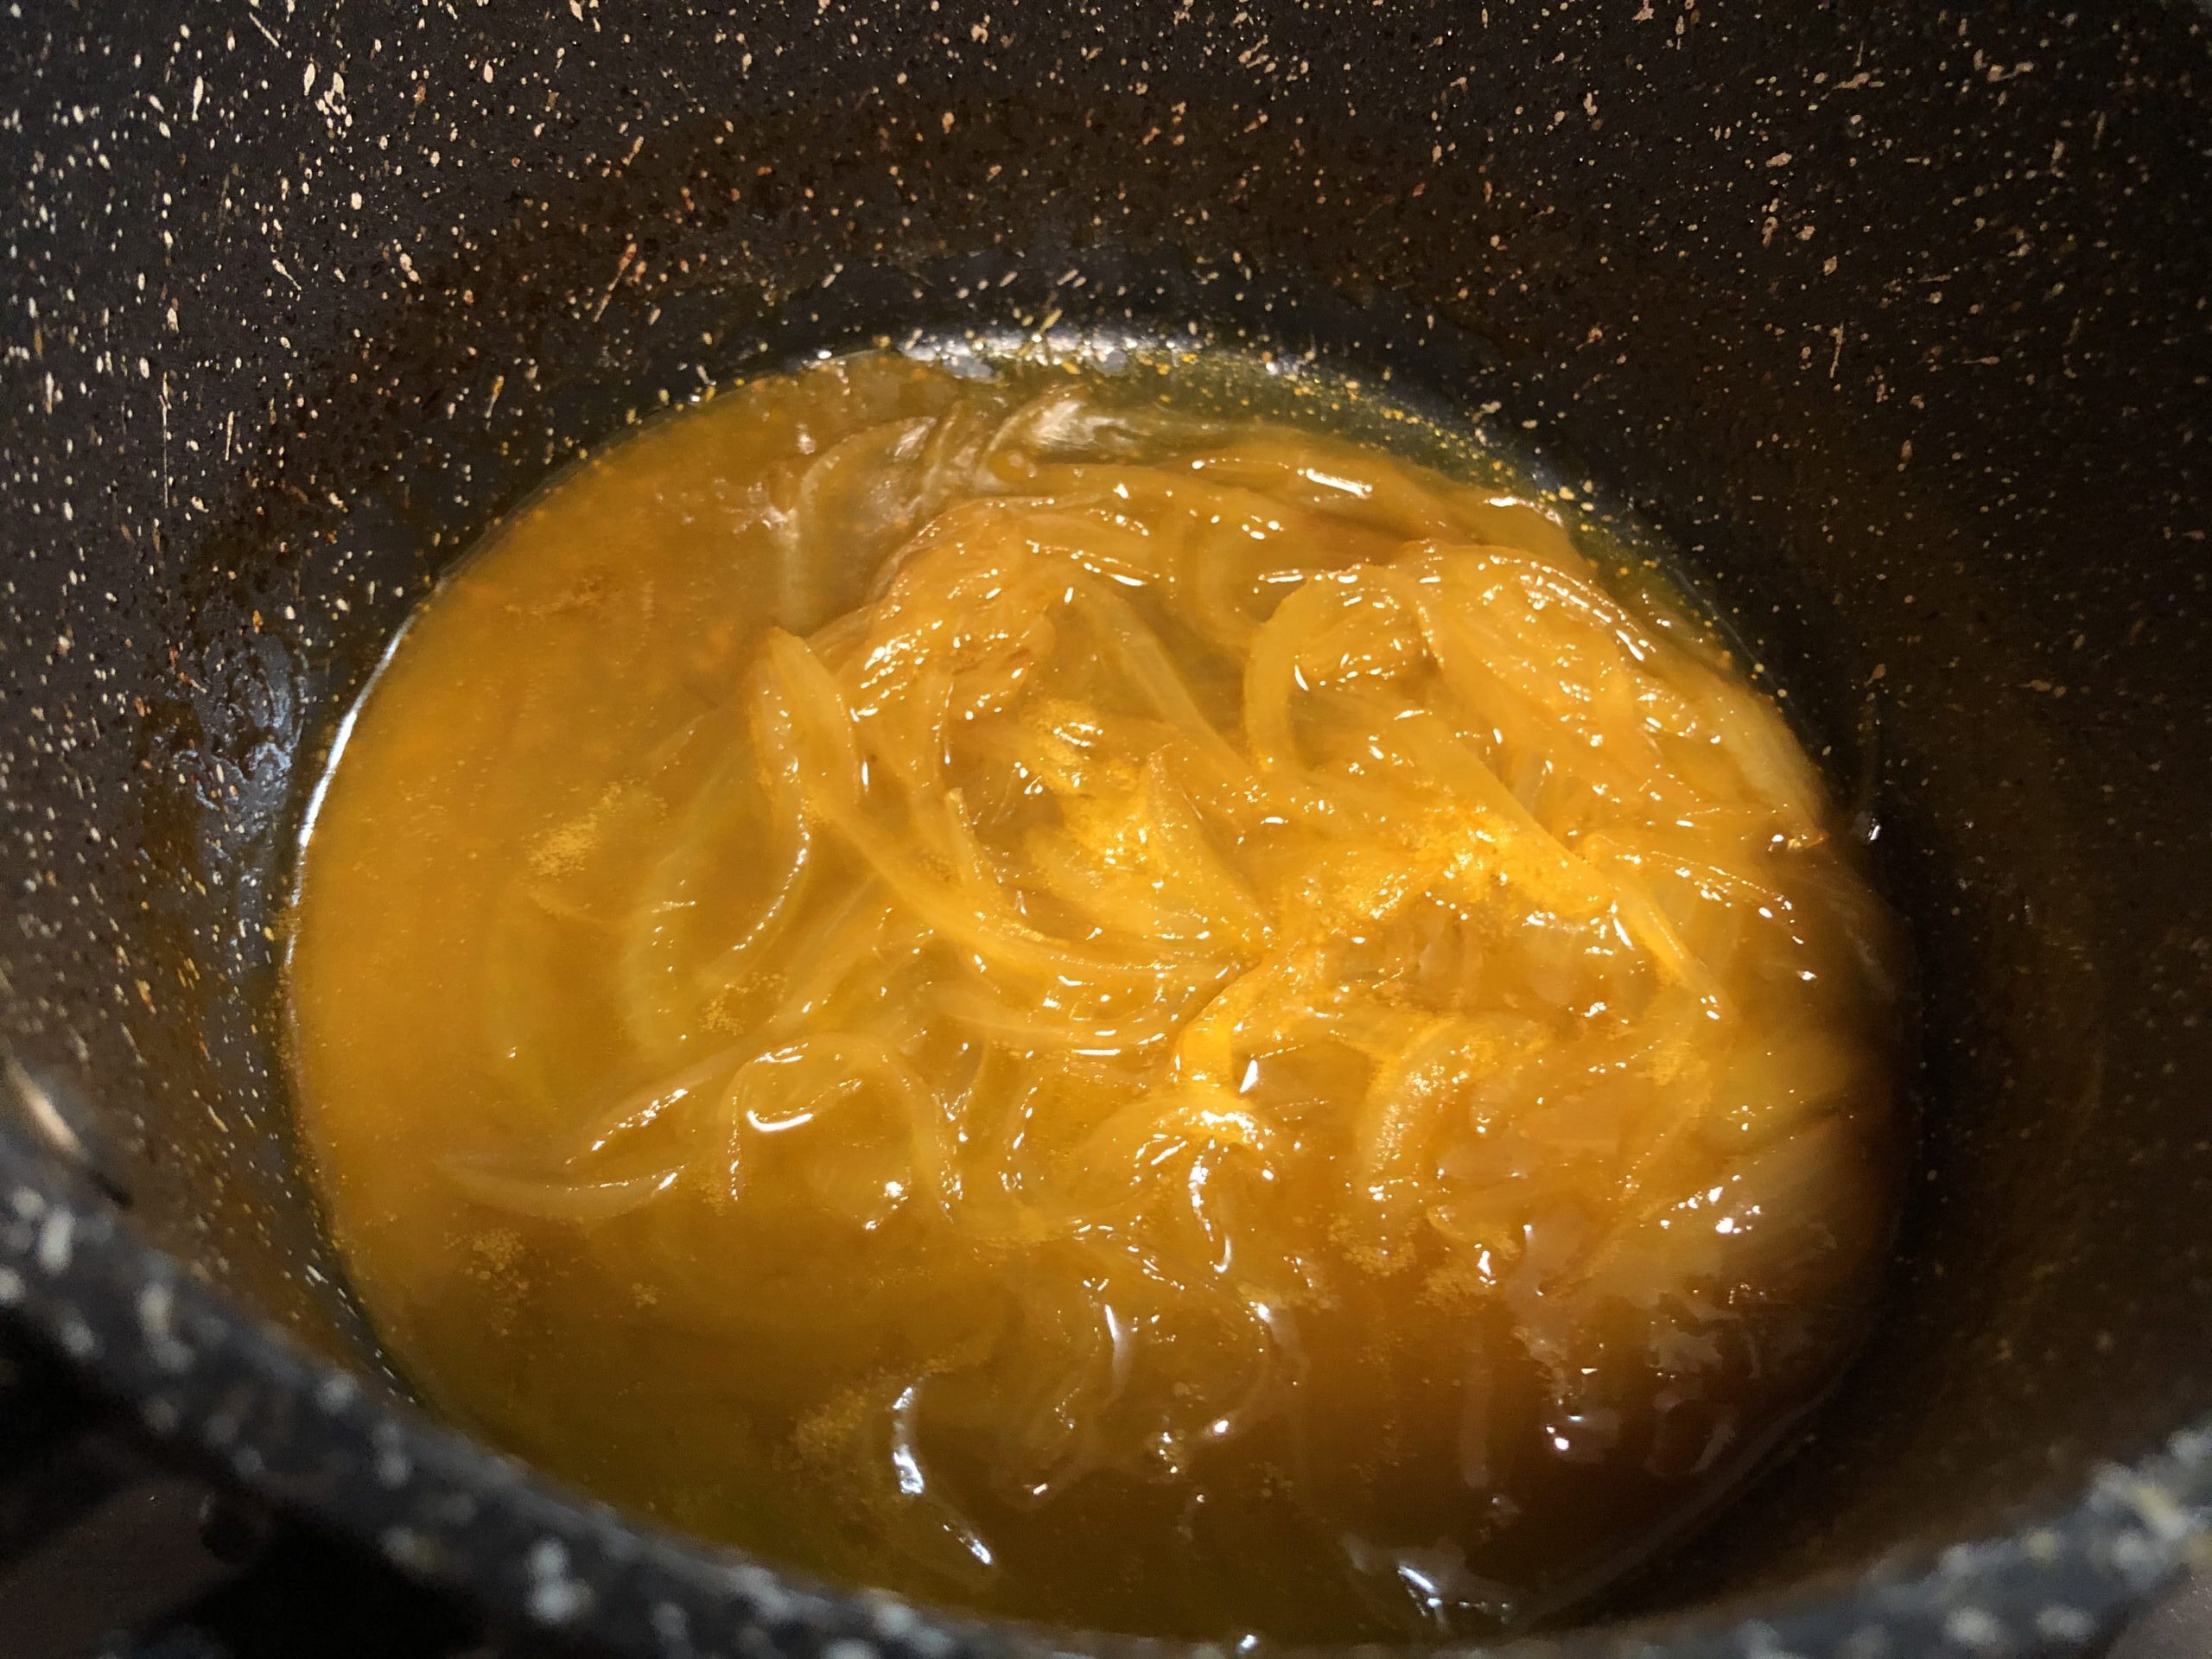 煮詰まった玉ねぎ入りオレンジジュースの画像です